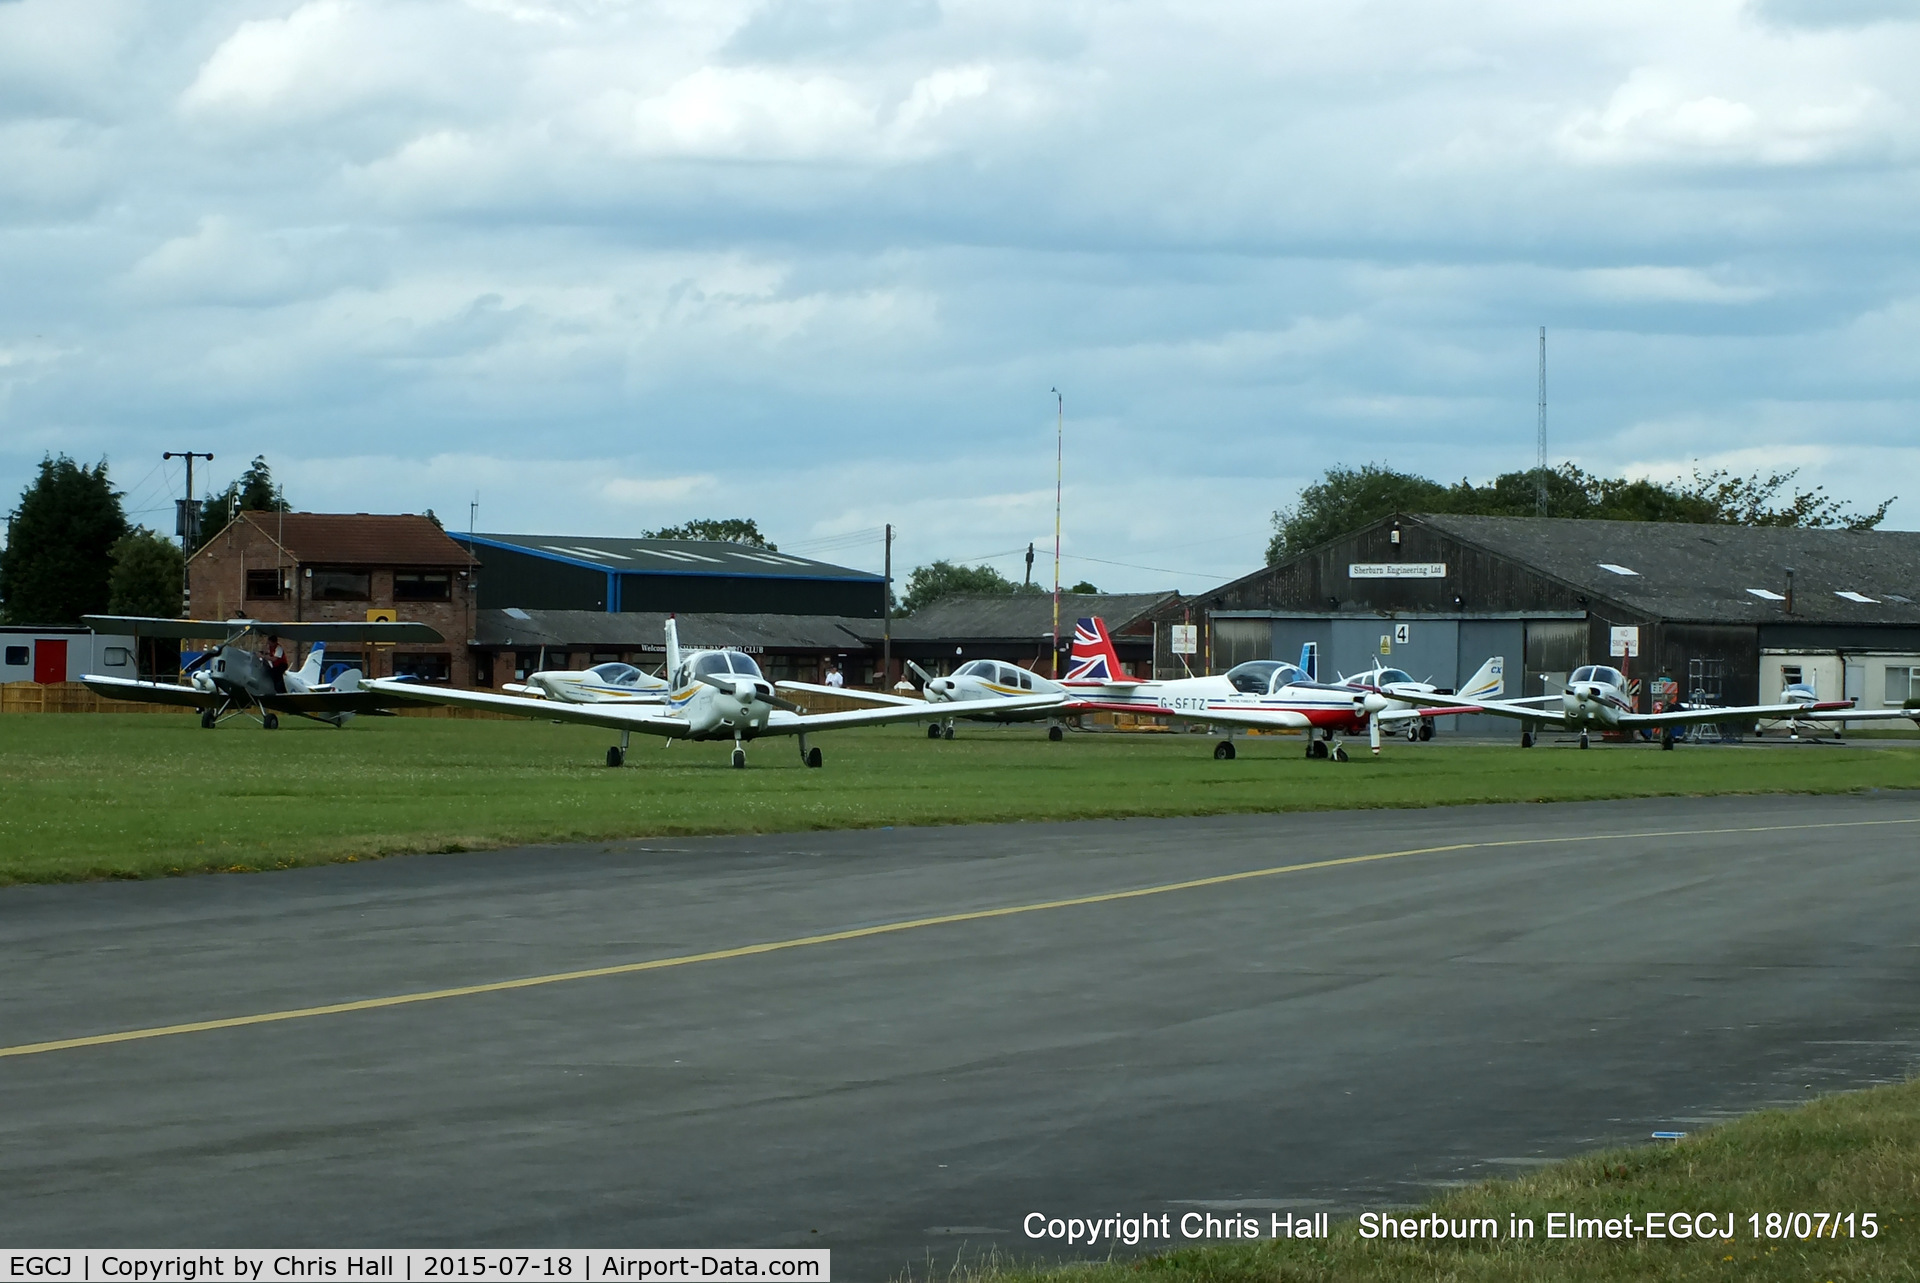 Sherburn-in-Elmet Airfield Airport, Sherburn-in-Elmet, England United Kingdom (EGCJ) - Sherburn in Elmet